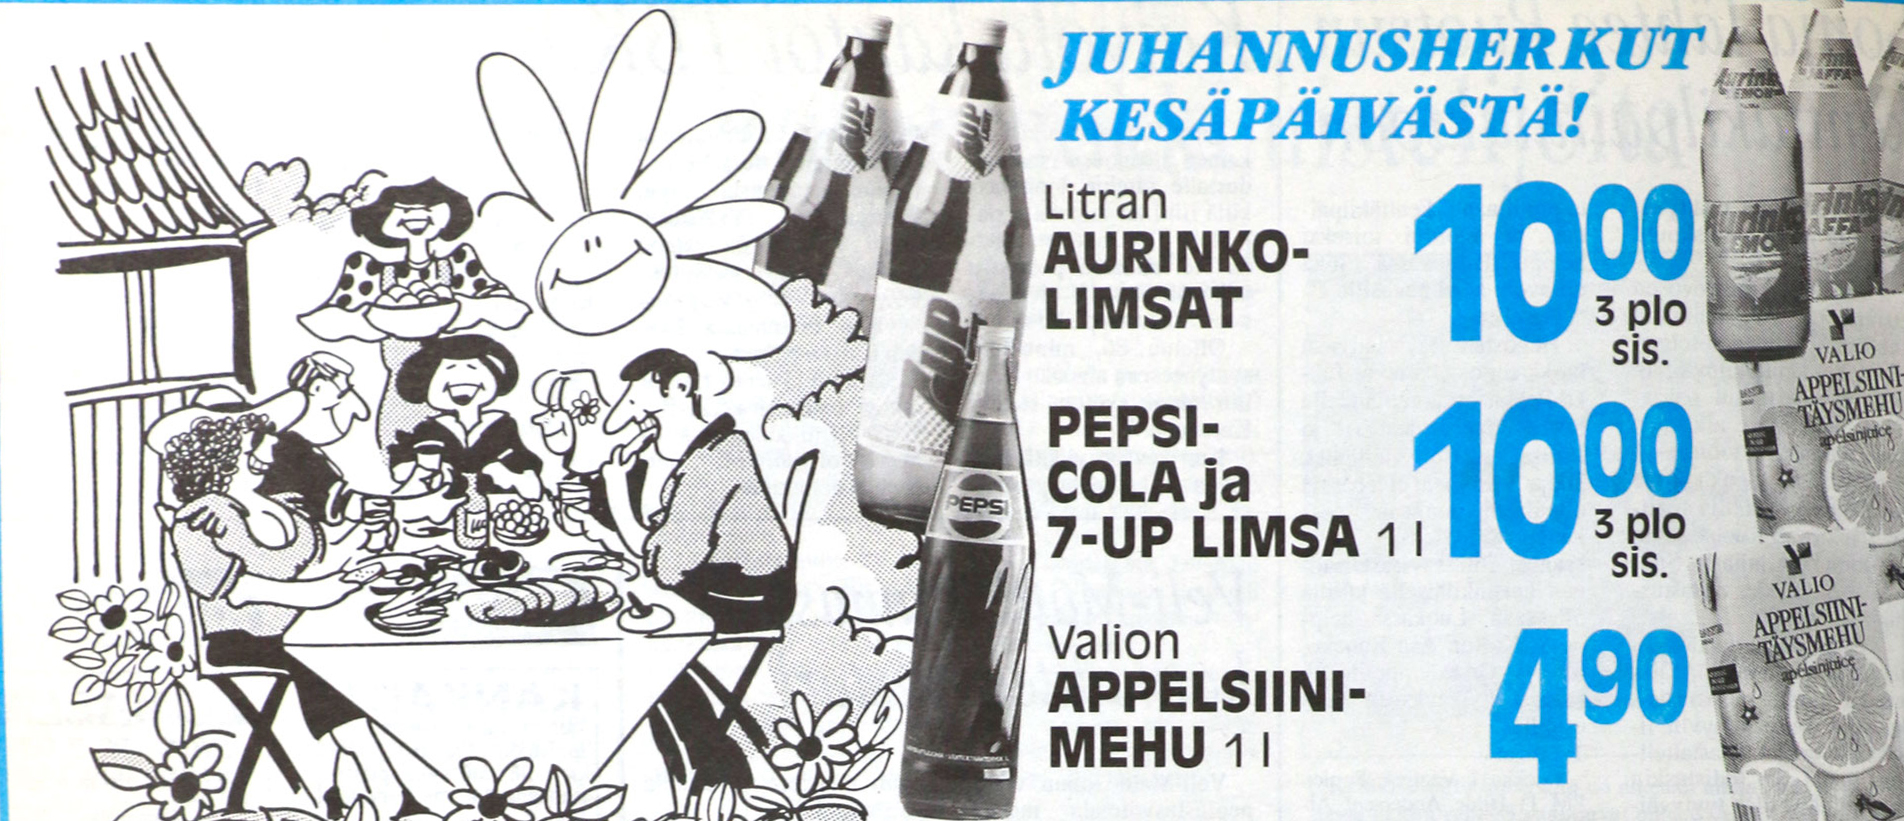 Tänään KS-juhannuskalenterissa K-market Kesäpäivän ilmoitus juhannuslehdestä 22.6.1993.